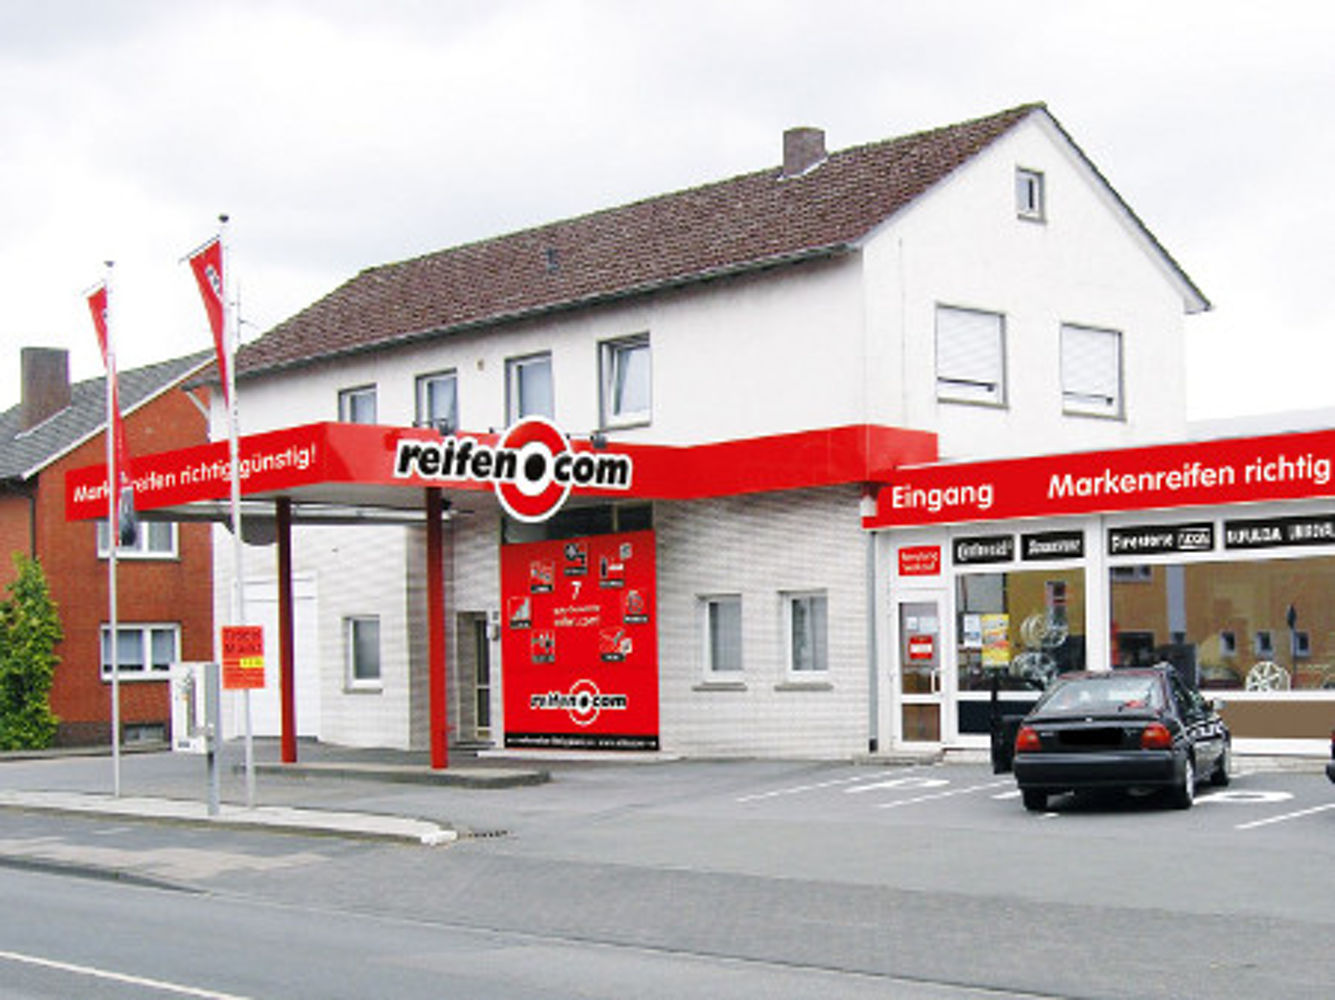 reifen.com-branch in Verl